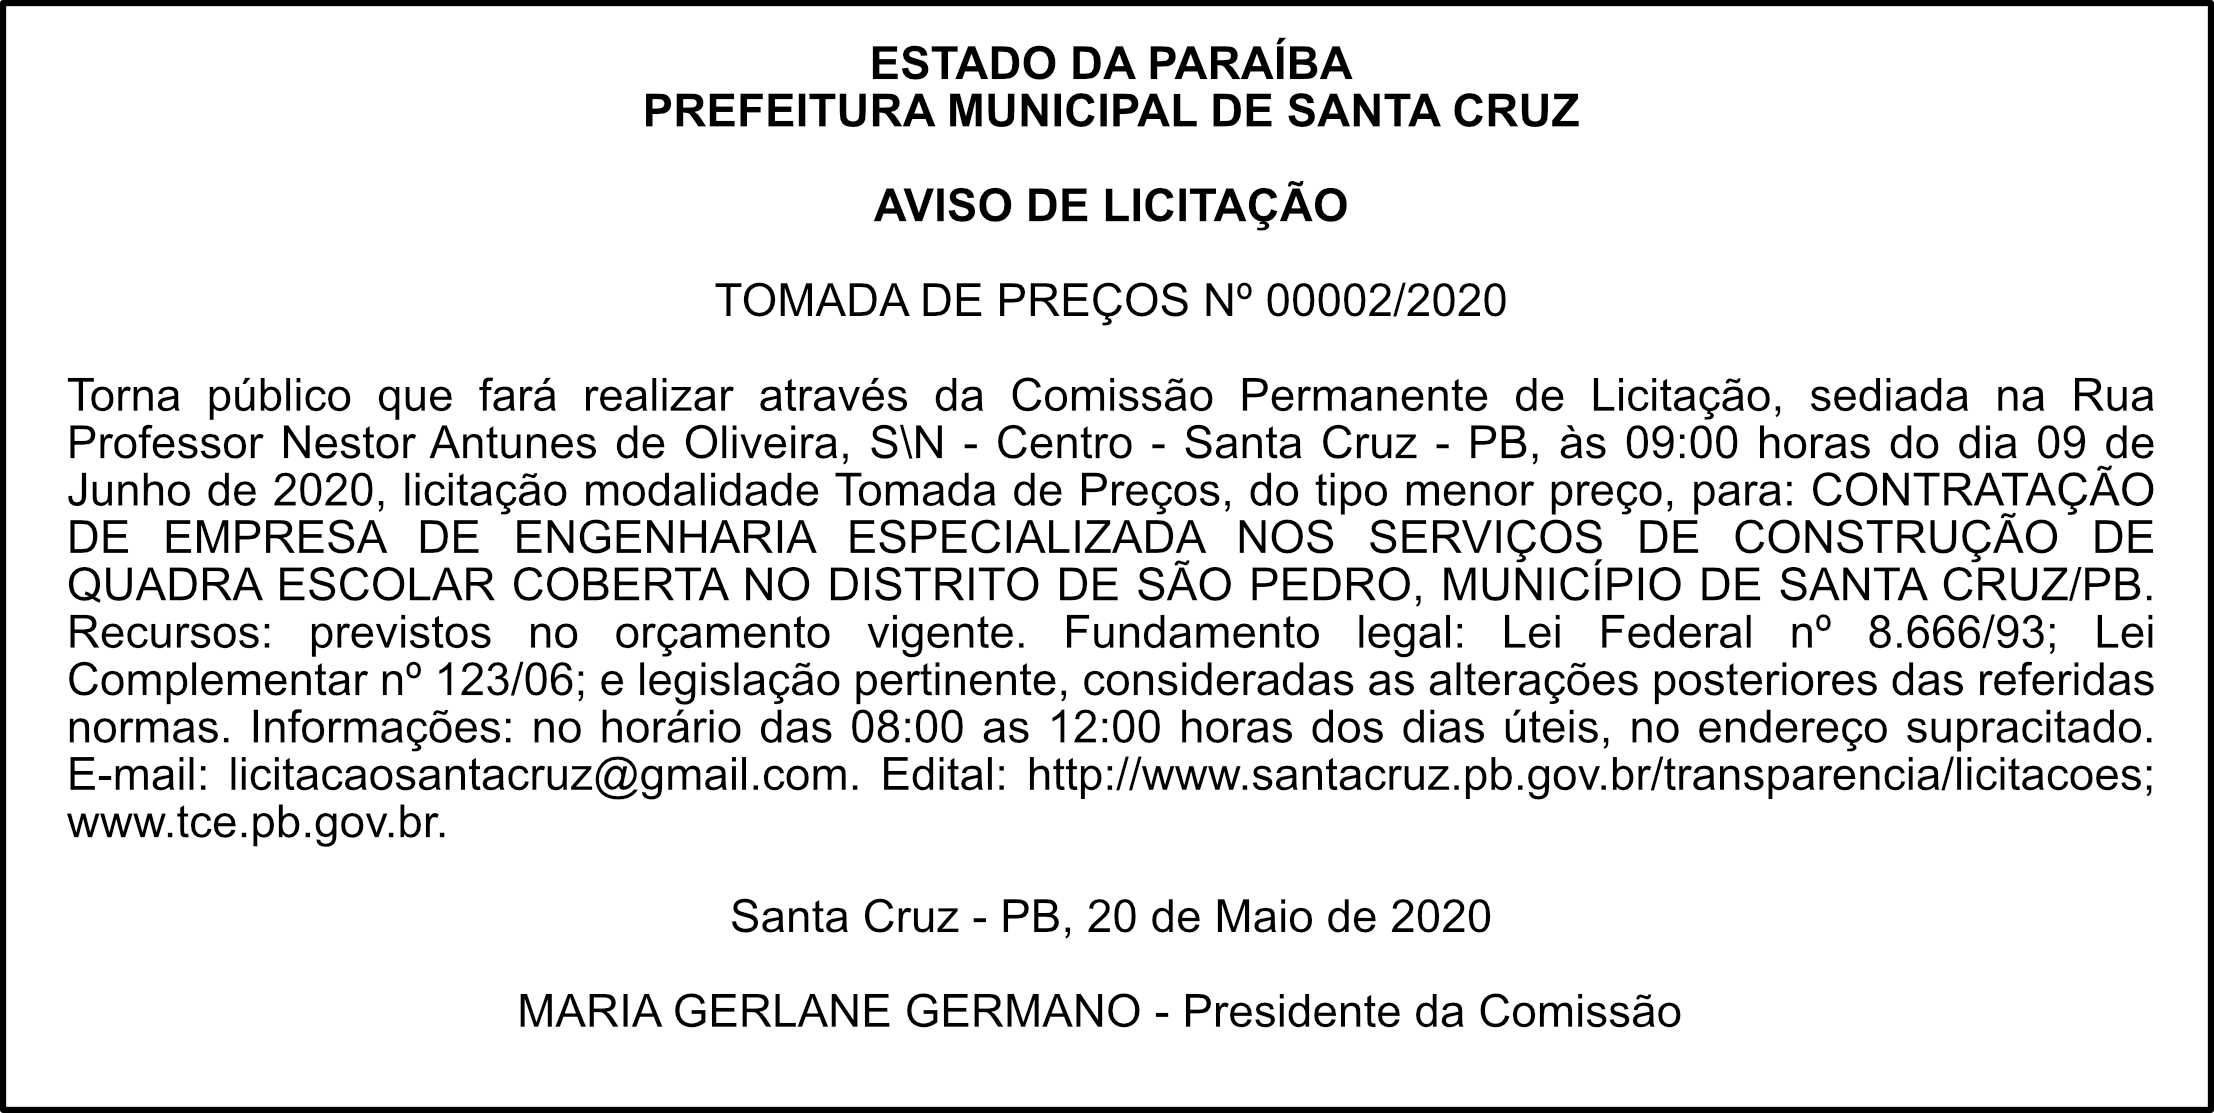 PREFEITURA MUNICIPAL DE SANTA CRUZ – AVISO DE LICITAÇÃO – TOMADA DE PREÇOS Nº 00002/2020